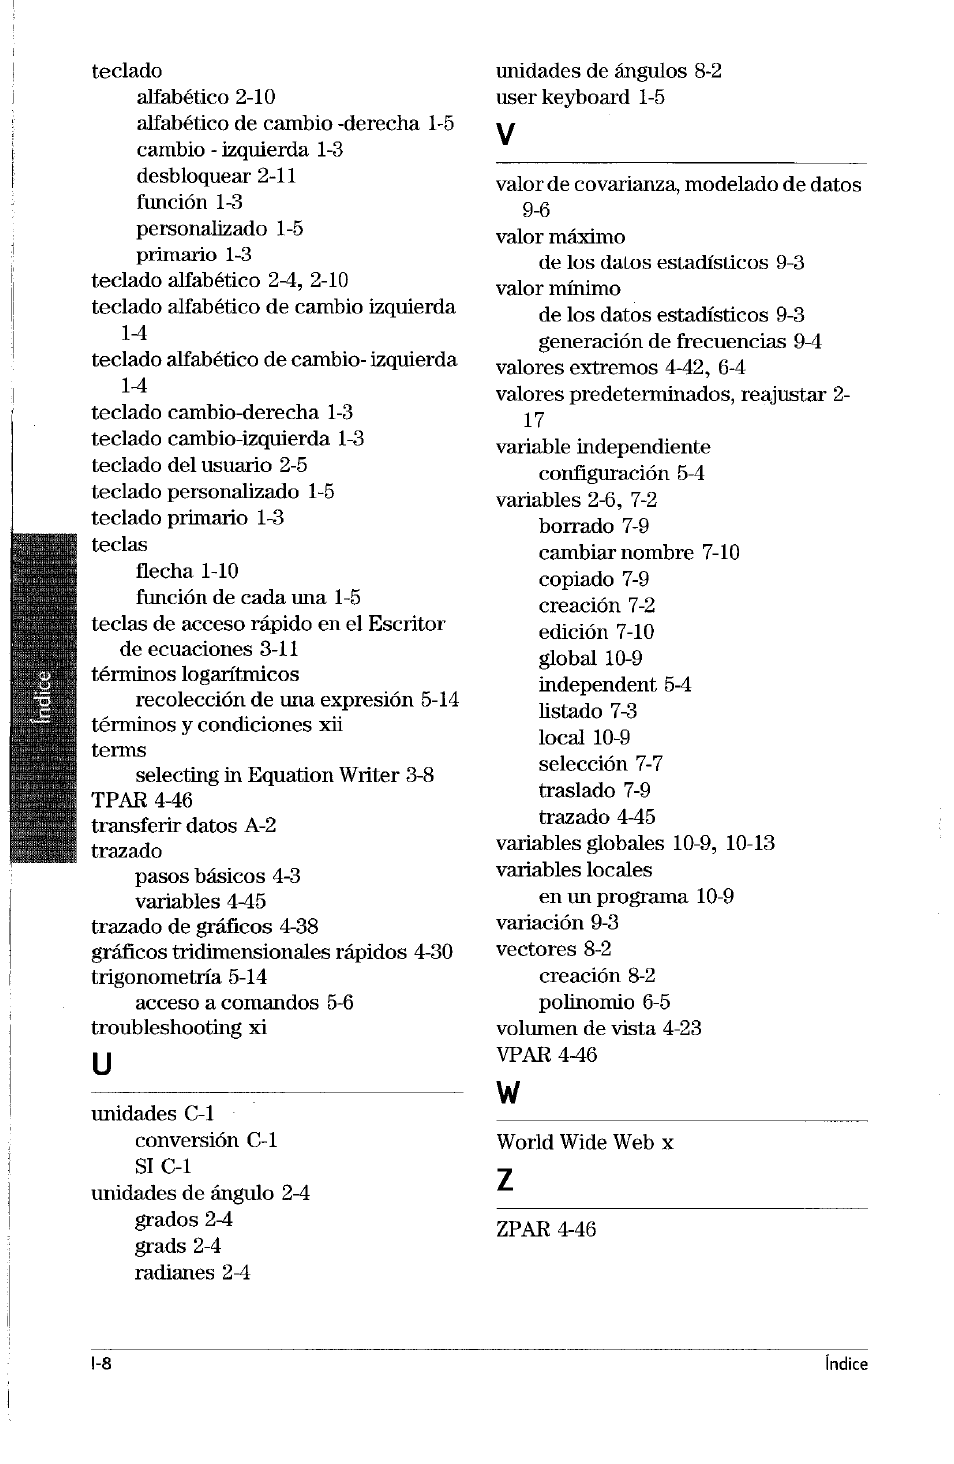 instinto Propuesta mendigo HP Calculadora Gráfica HP 49g Manual del usuario | Página 251 / 253 |  Original